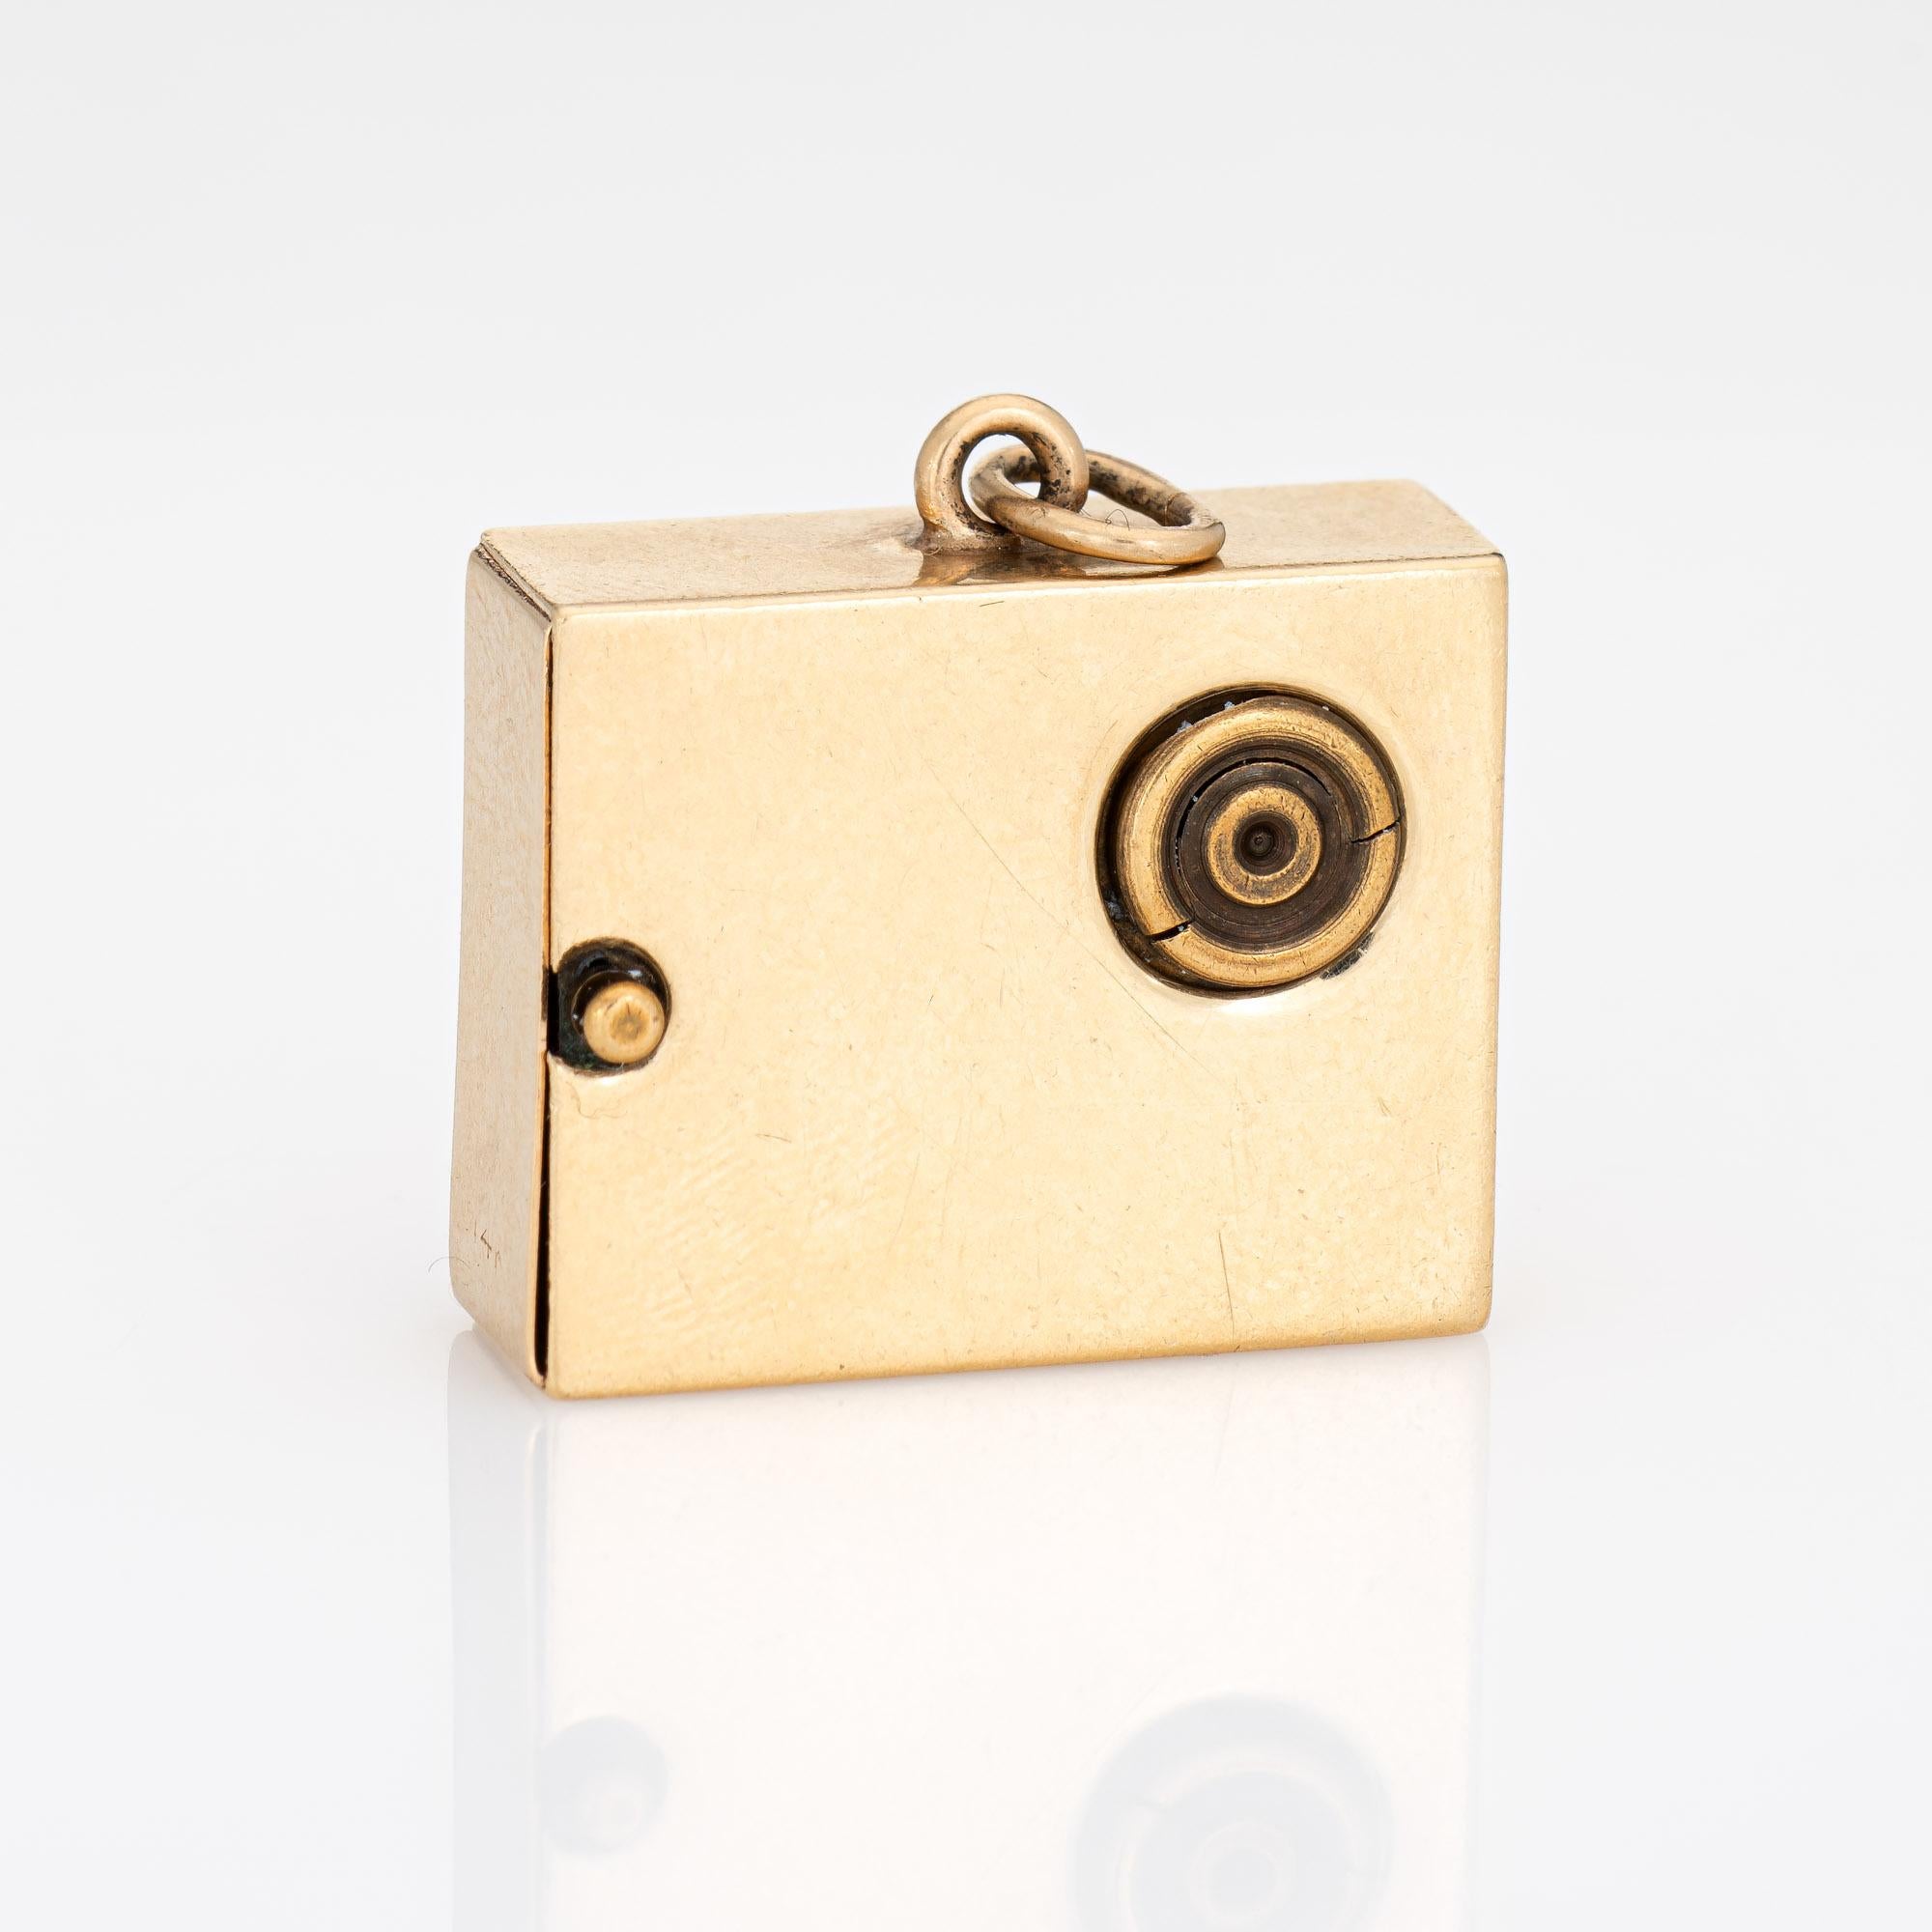 Fein detaillierter mechanischer Spieldosen-Charme aus 14-karätigem Gelbgold (ca. 1950er bis 1960er Jahre).  

Der mit Edelsteinen besetzte Charme der Spieldose ist in Florentine gehalten und mit einem Notenblatt und einem Violinschlüssel versehen.